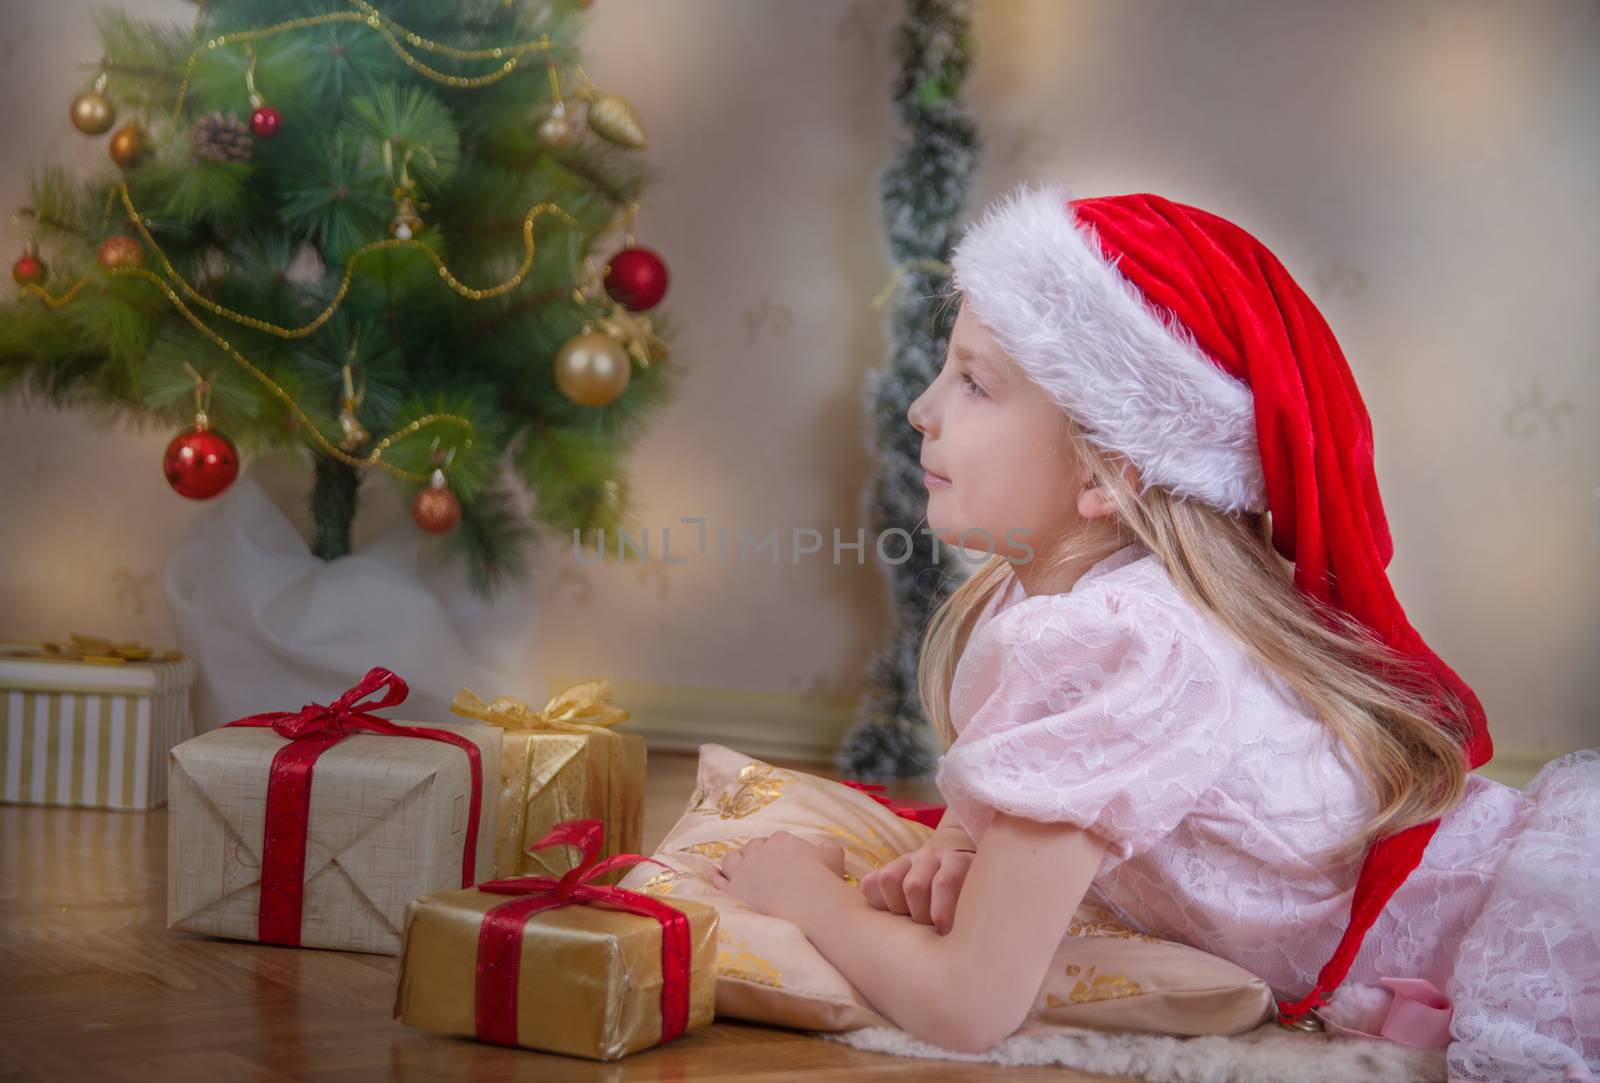 Cute girl in Santa hat dreaming under Christmas tree